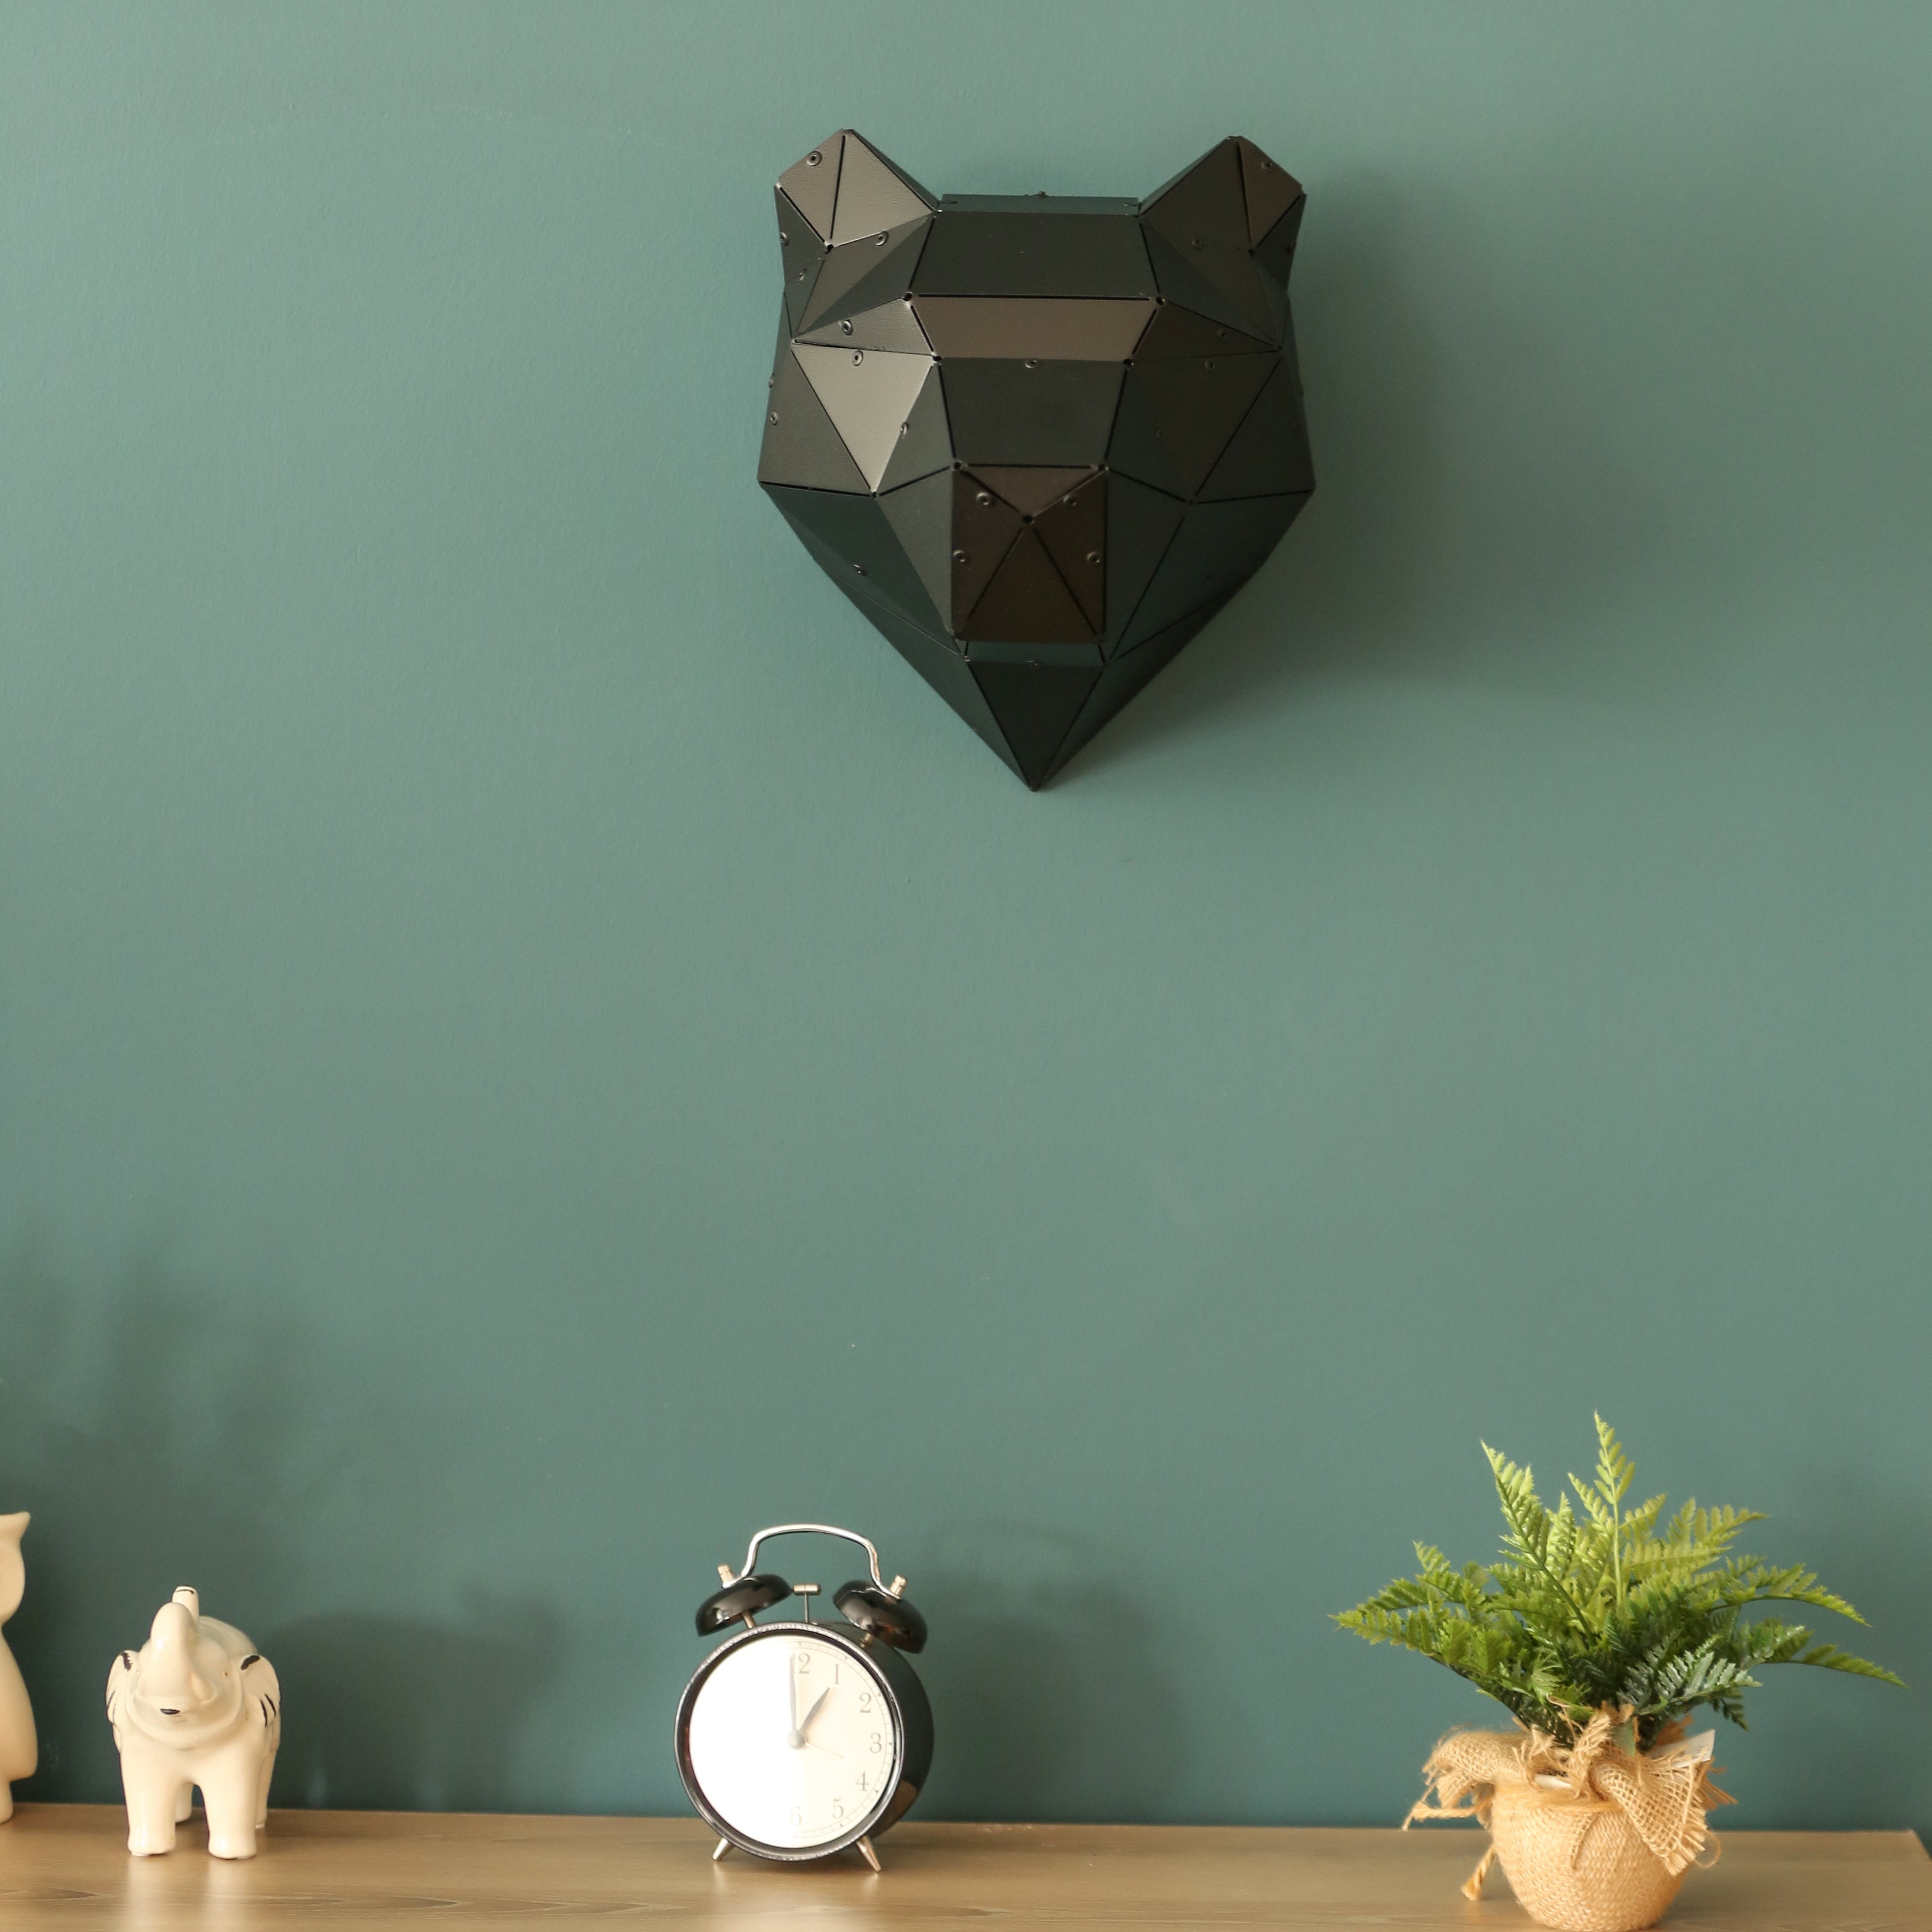 3D Geometric Wall Art of Puma